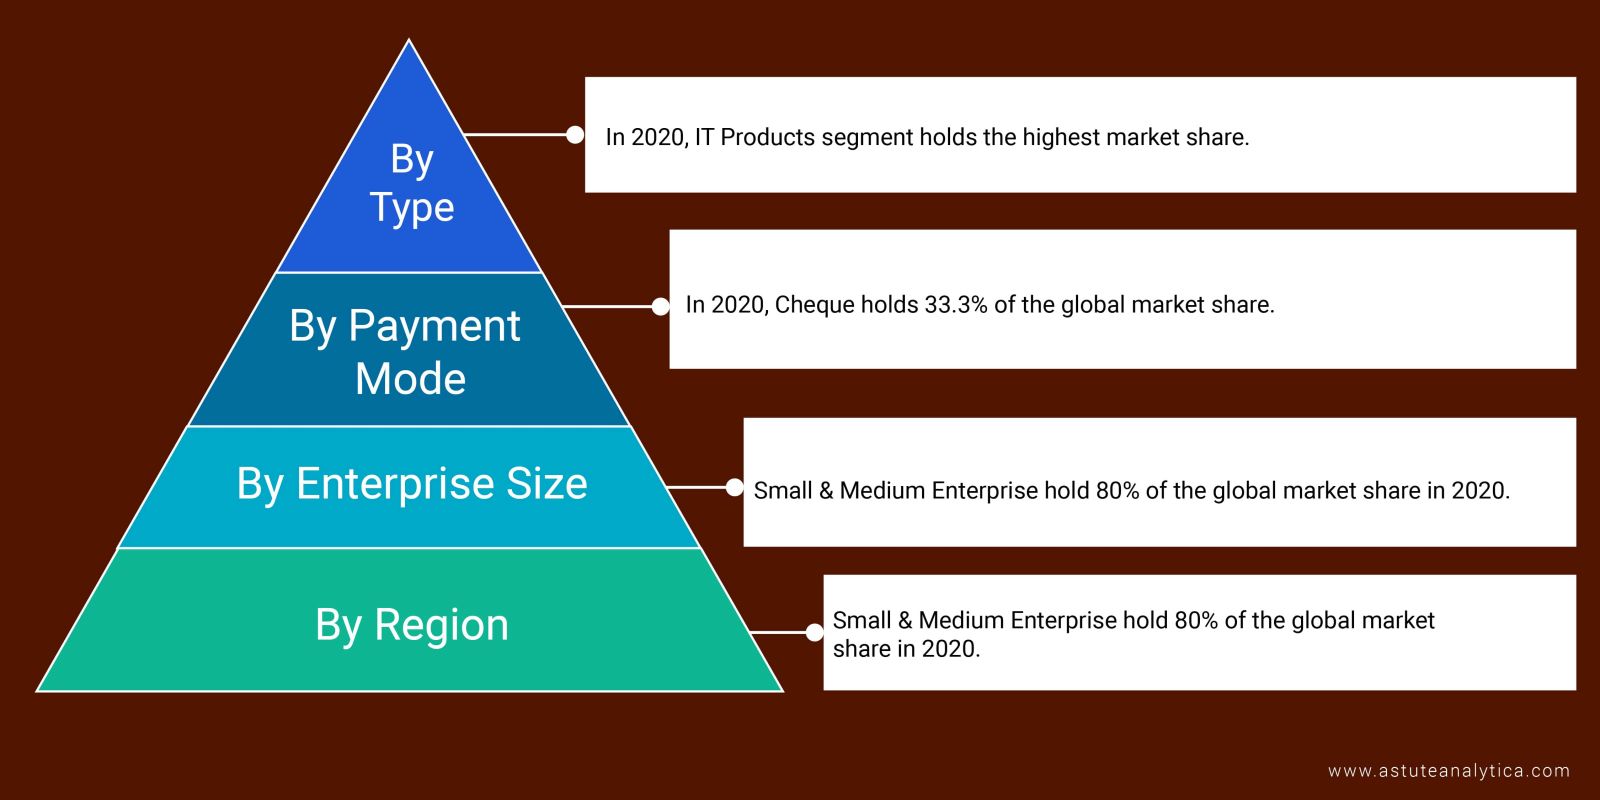 B2B E-commerce Market Segments